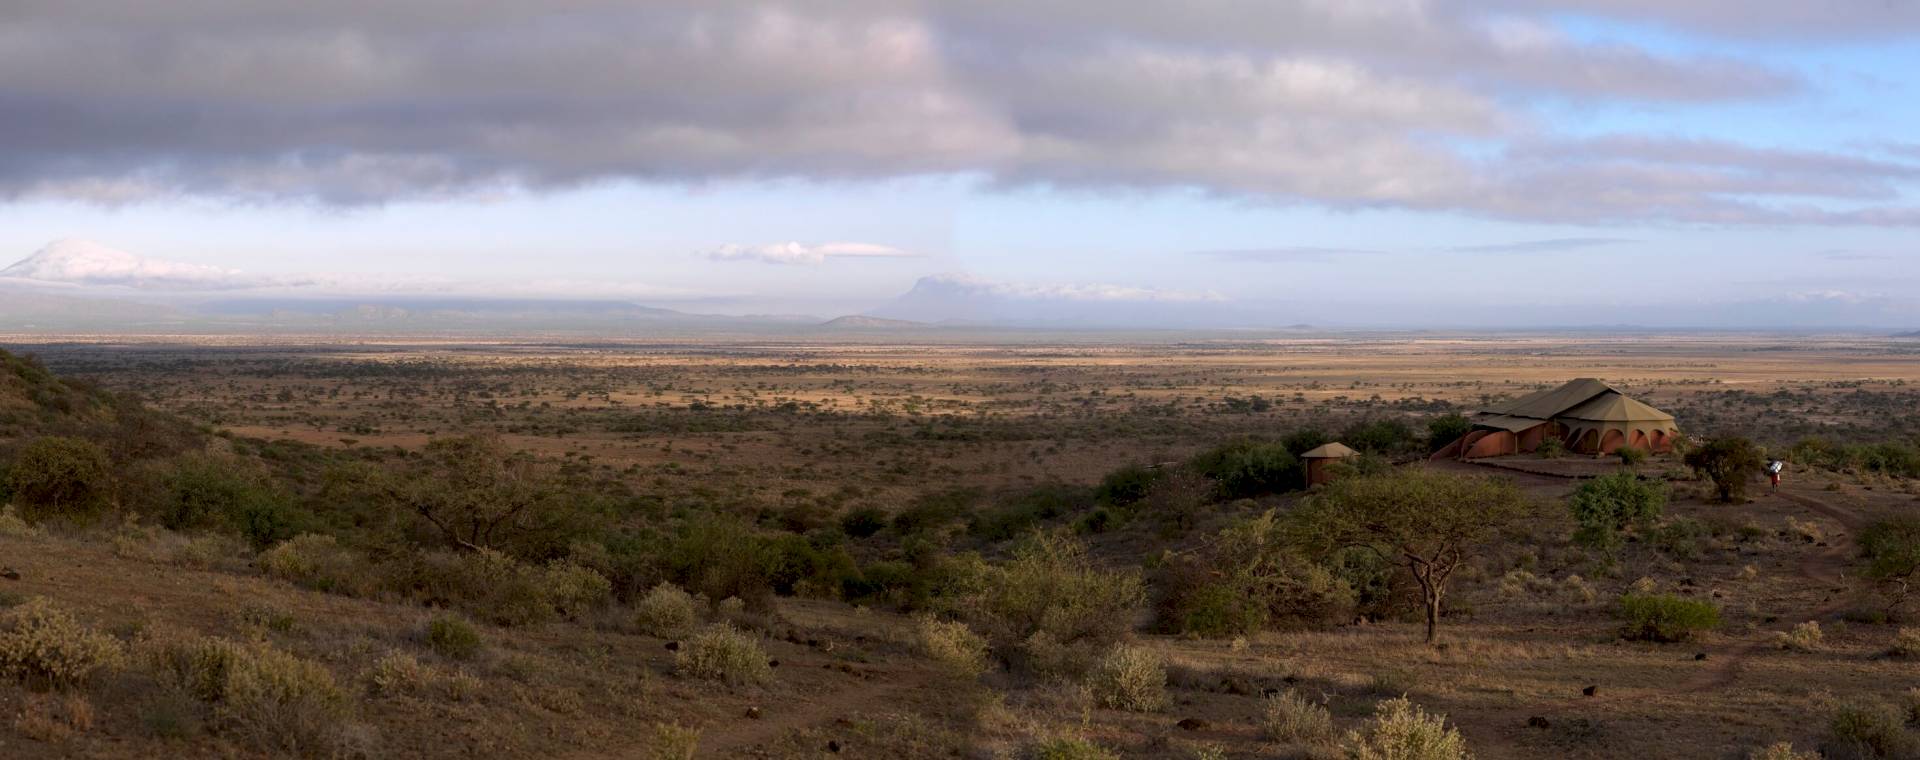 Kilimanjaro-West